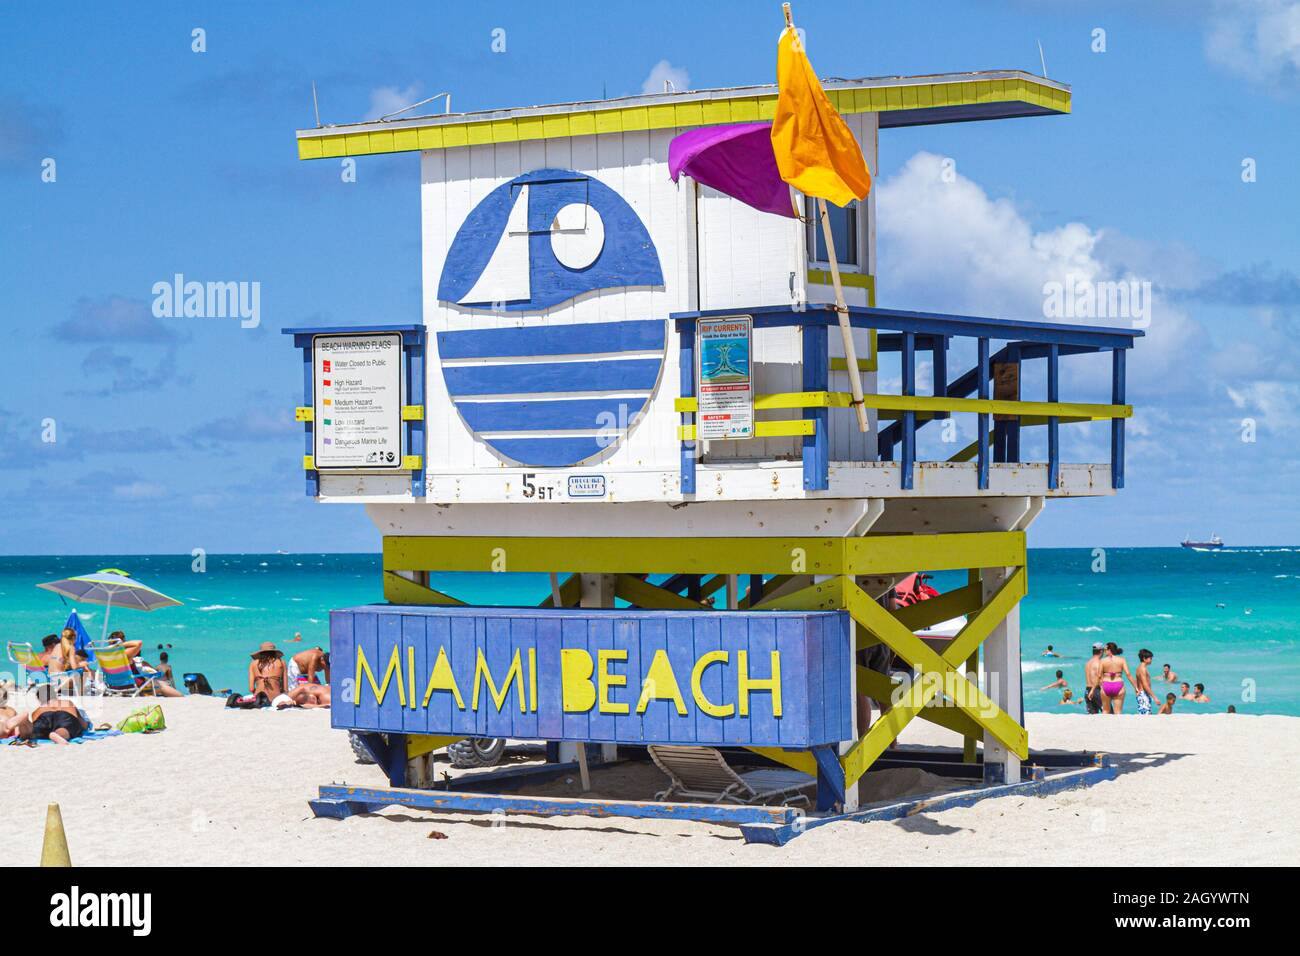 Miami Beach Florida, Atlantic Ocean Wasser Rettungsschwimmer Station, Hütte, Besucher reisen Reise Reise Tourismus Tourismus Wahrzeichen Kultur Kultur Kultur, vaca Stockfoto